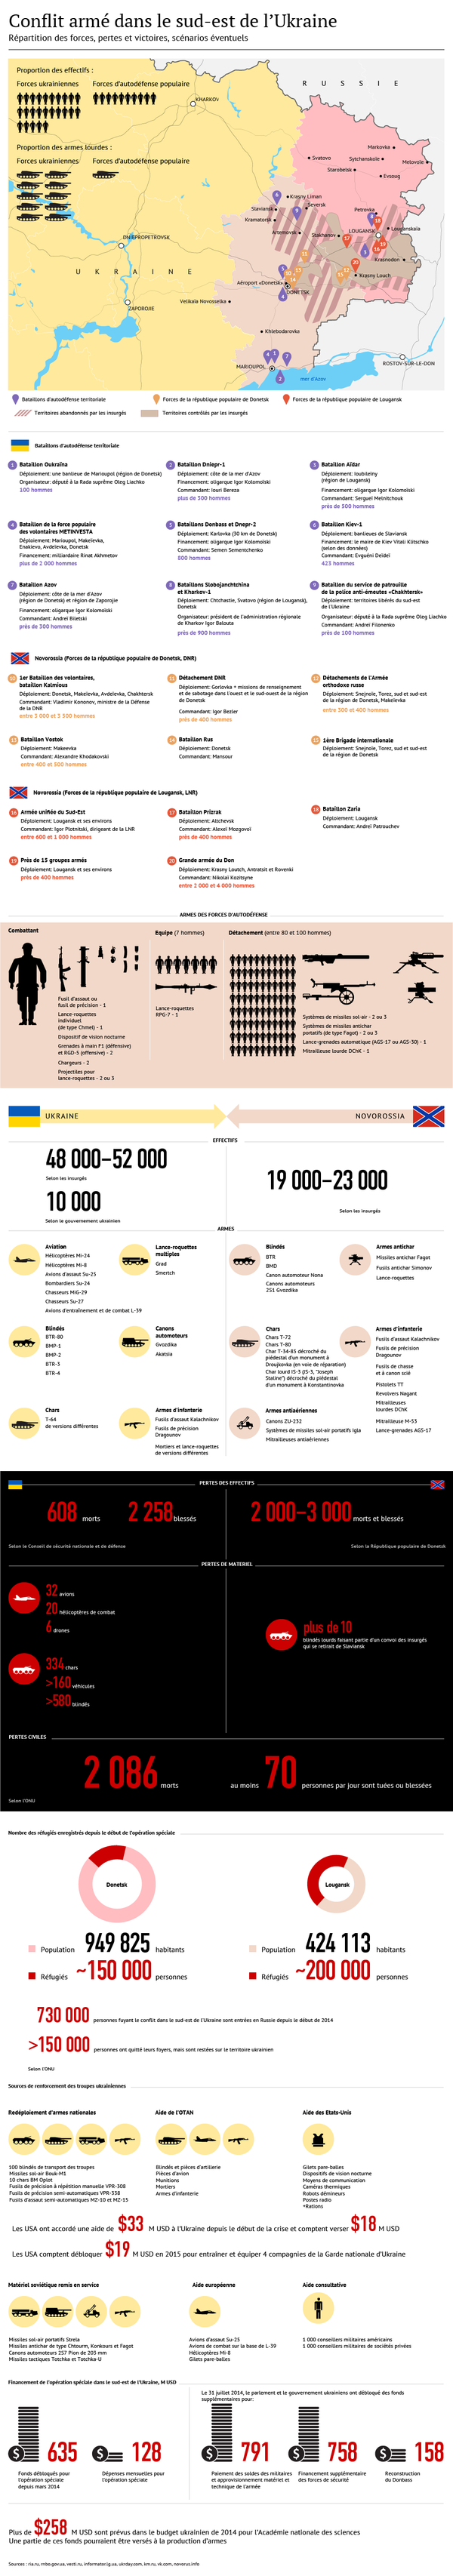 Conflit armé en Ukraine: réalités et perspectives - Sputnik Afrique